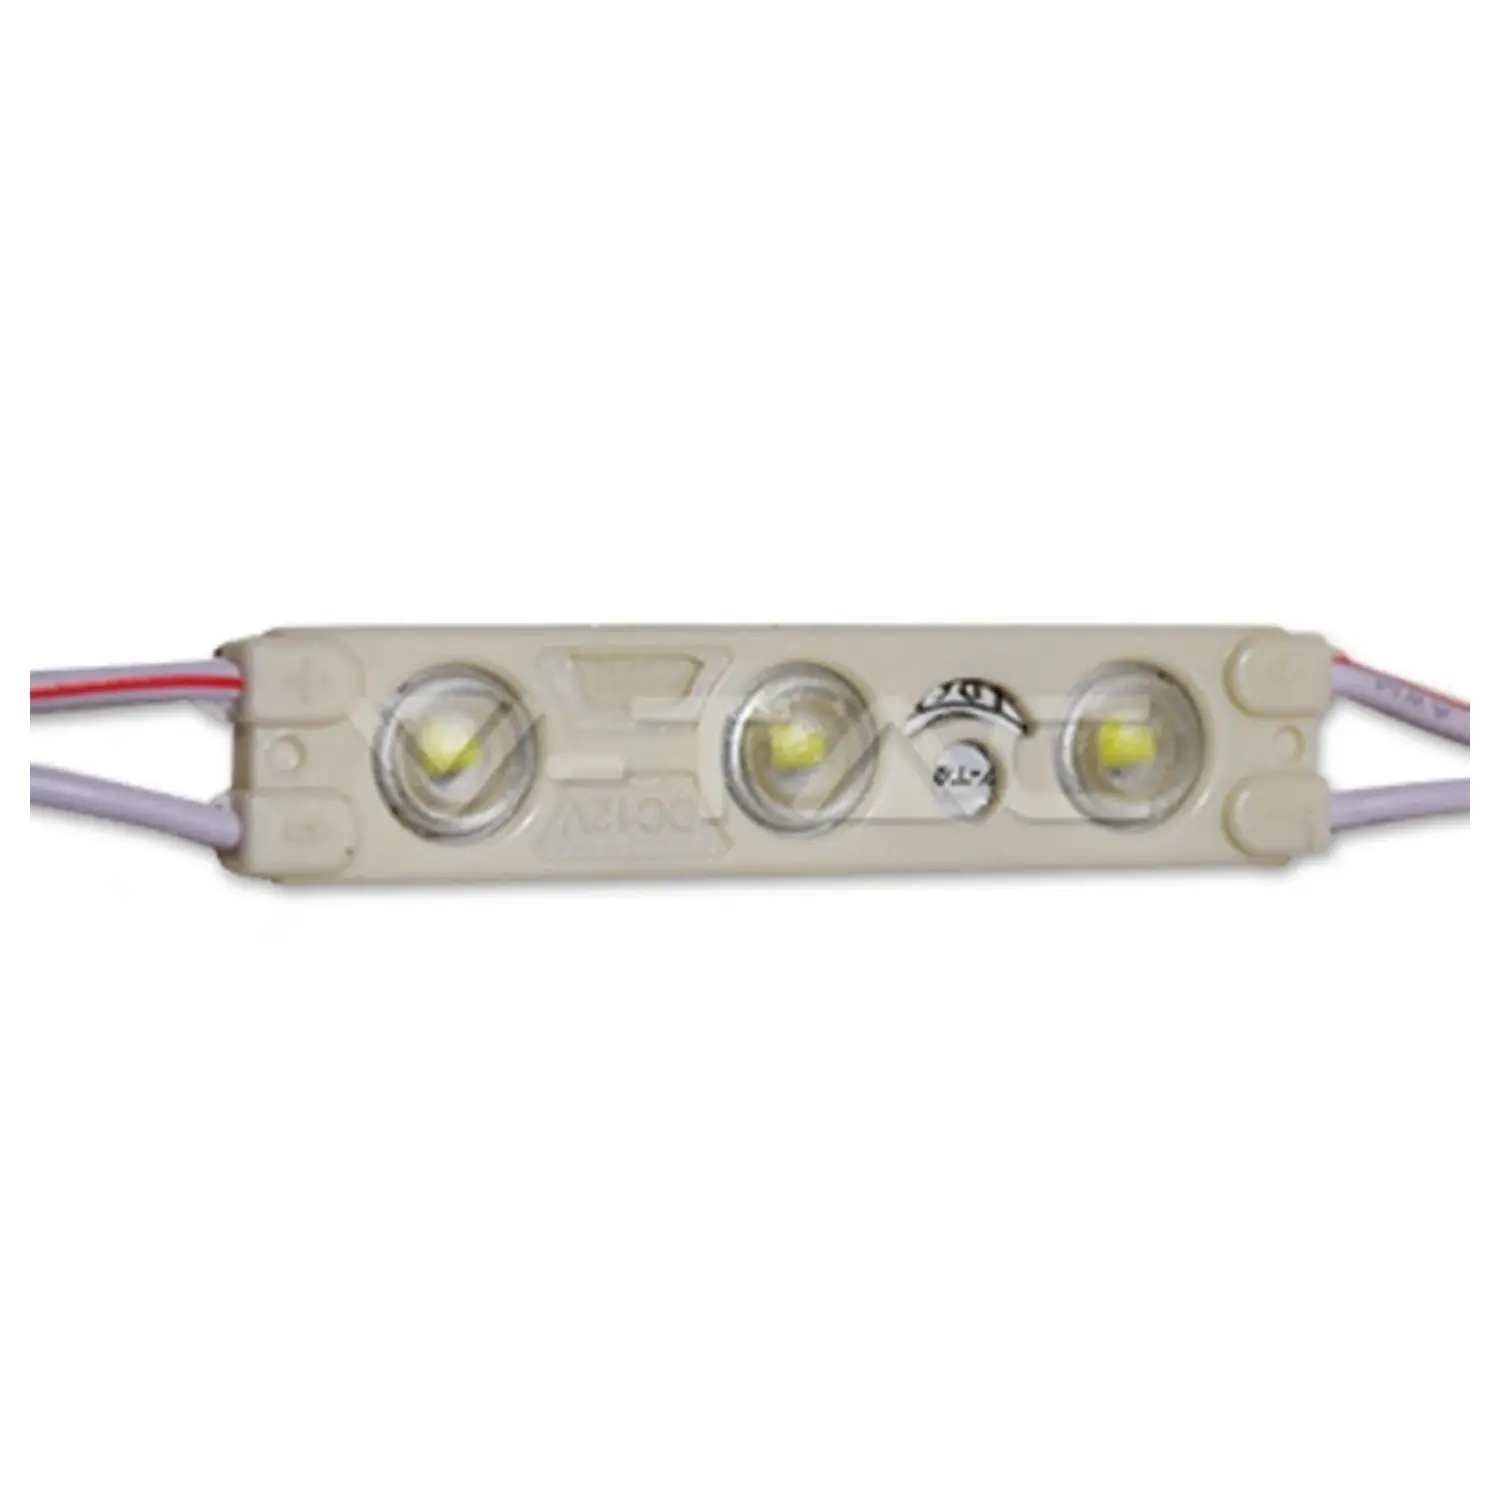 immagine modulo led 12 volt per insegne tabelle luminose striscia led 1 watt bianco freddo